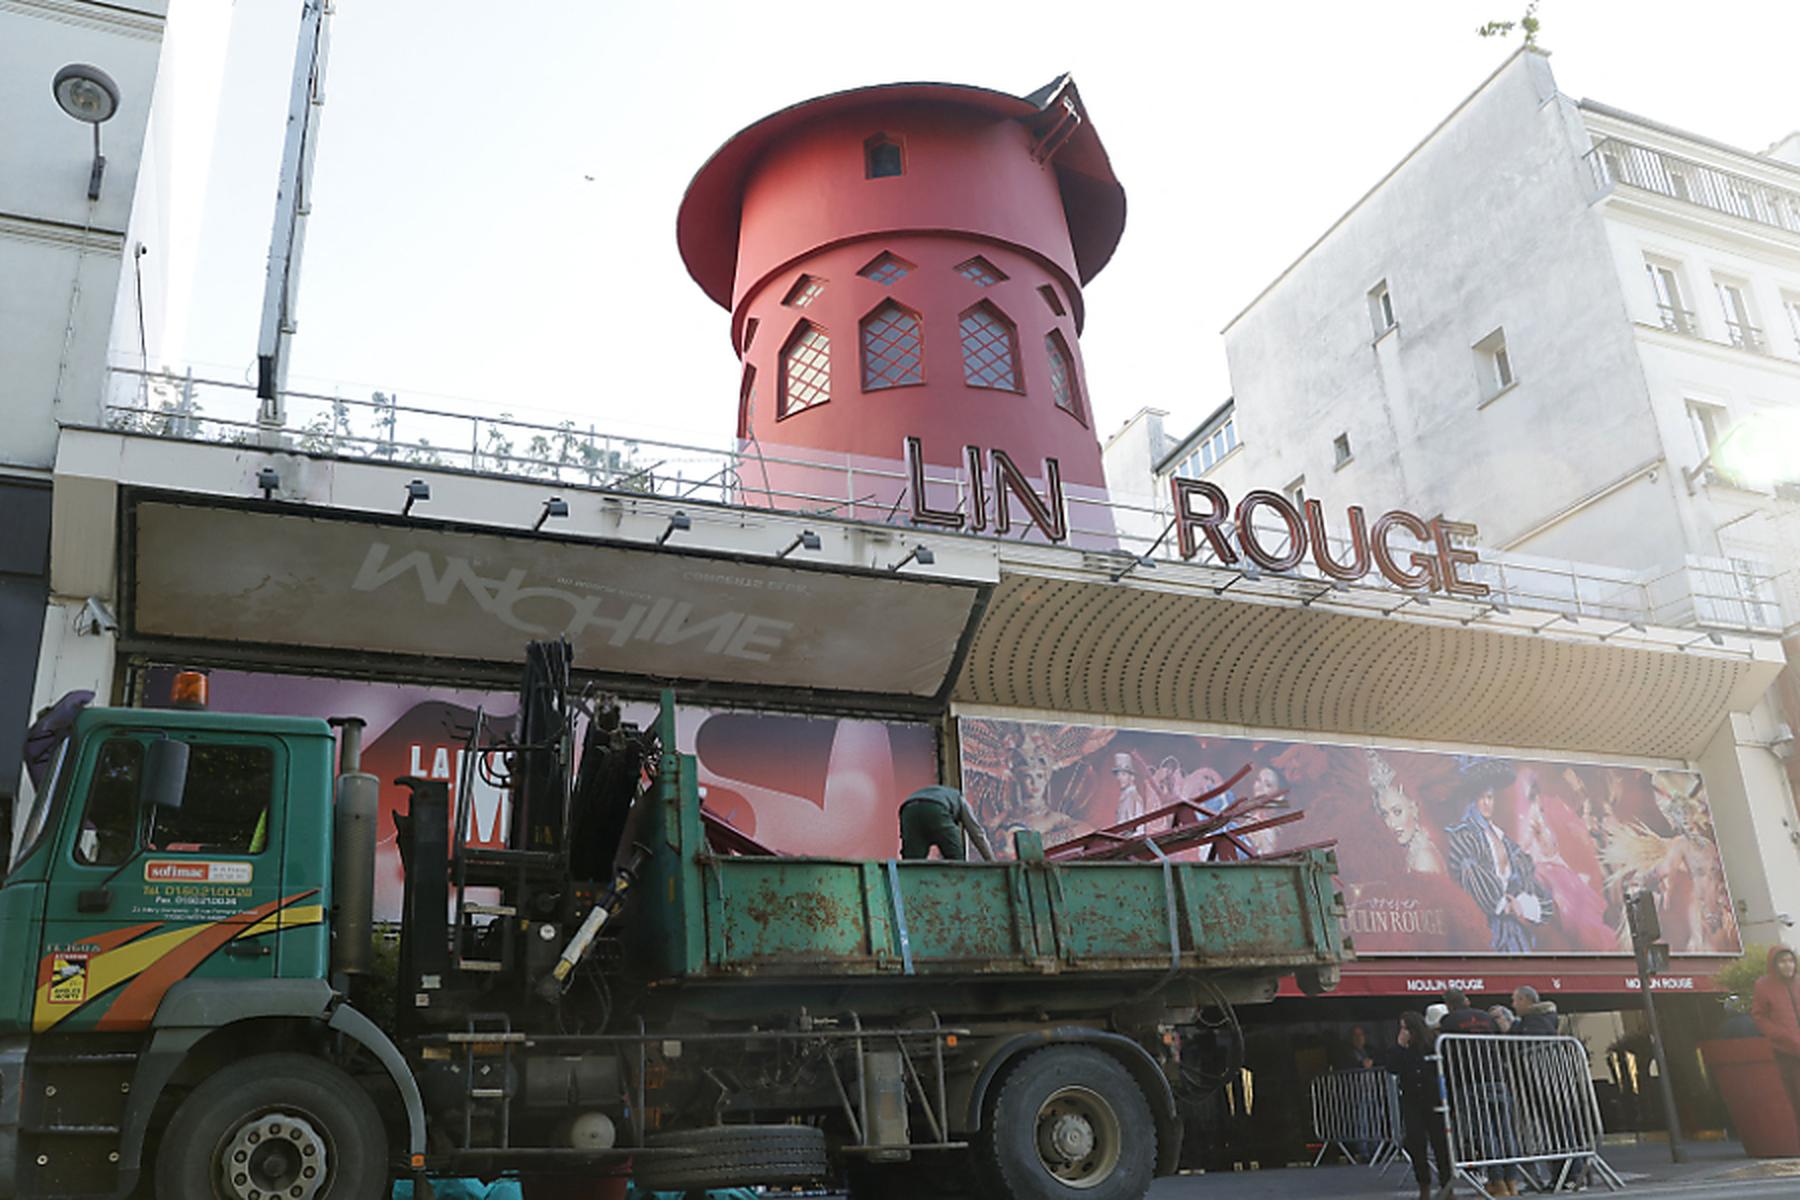 Paris: Windmühlenflügel von Moulin Rouge in Paris herabgestürzt